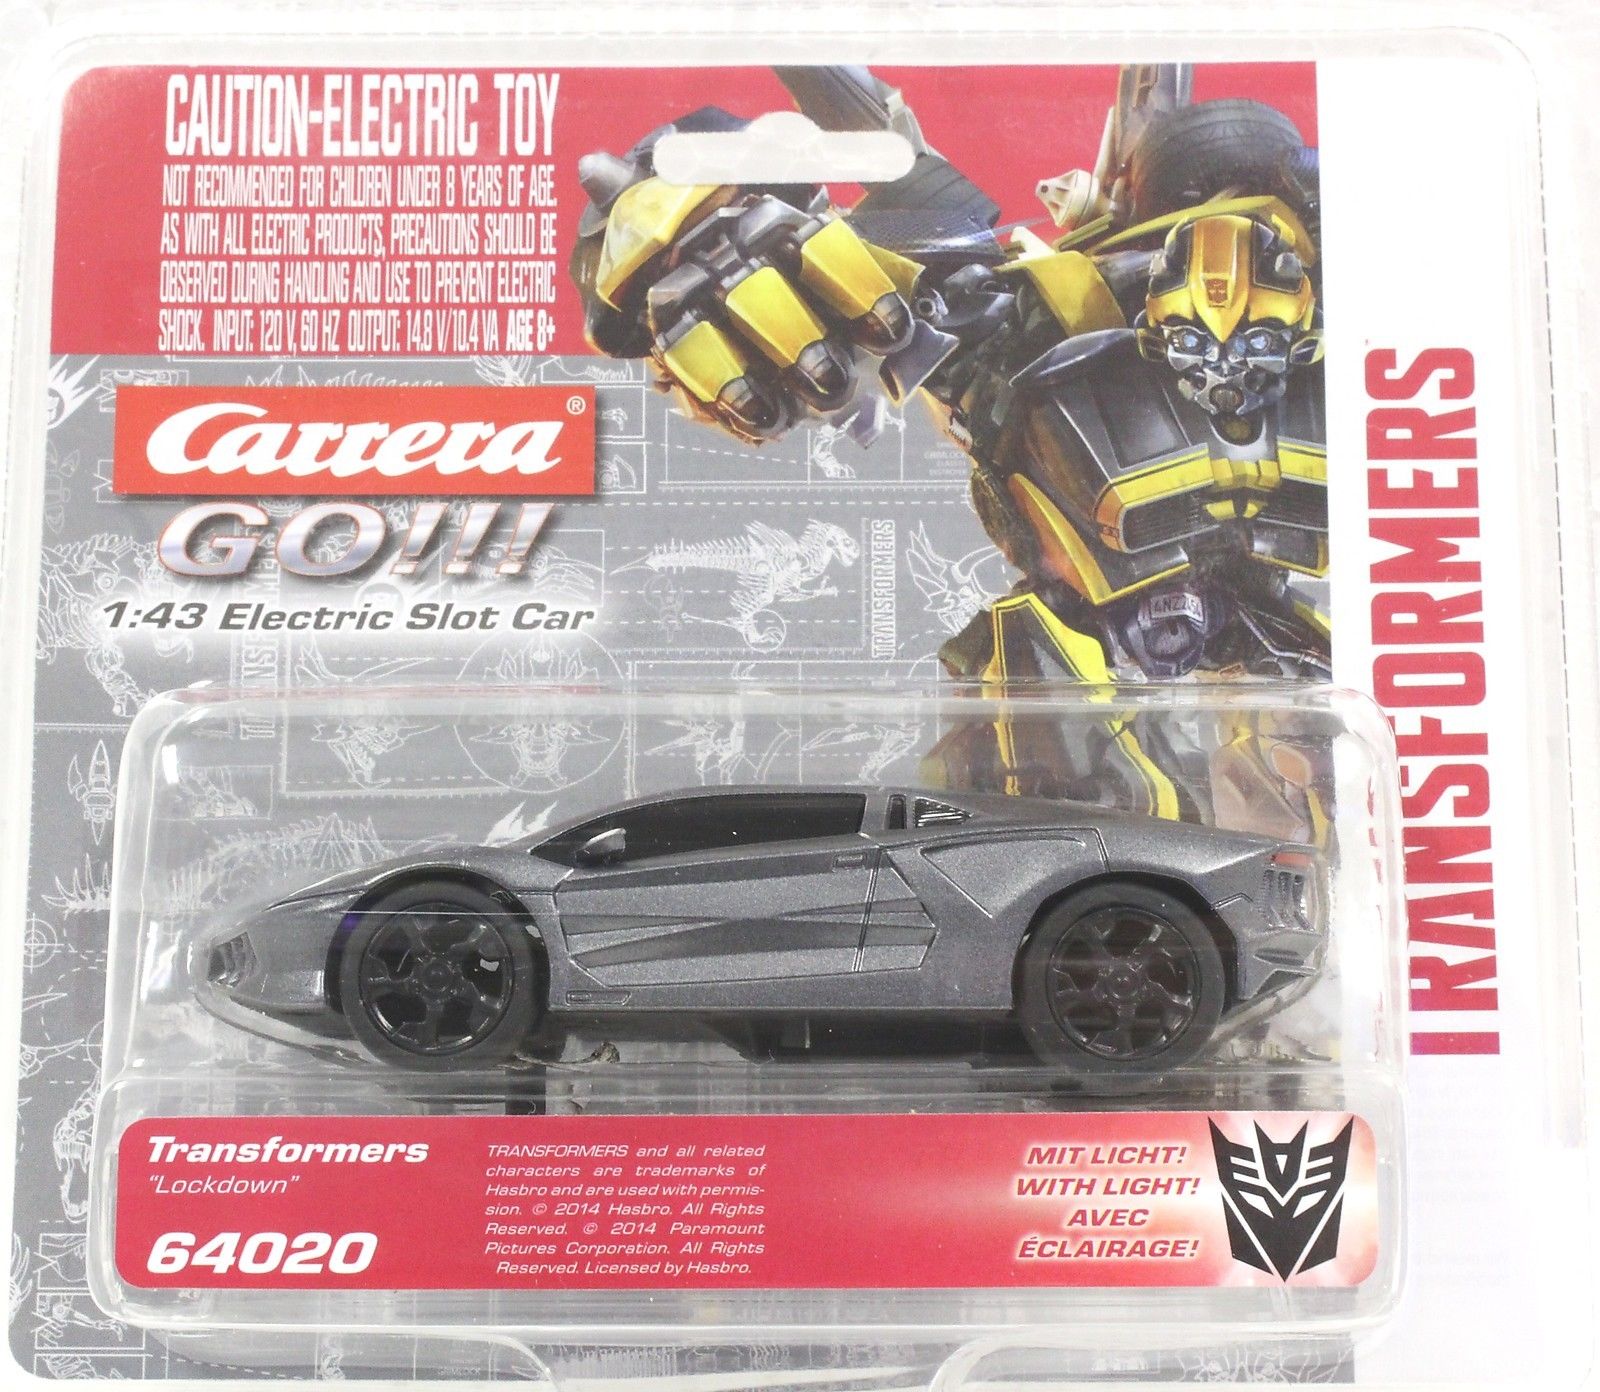 Дополнительная машинка для трека Carrera GO!!! Transformers - Lockdown